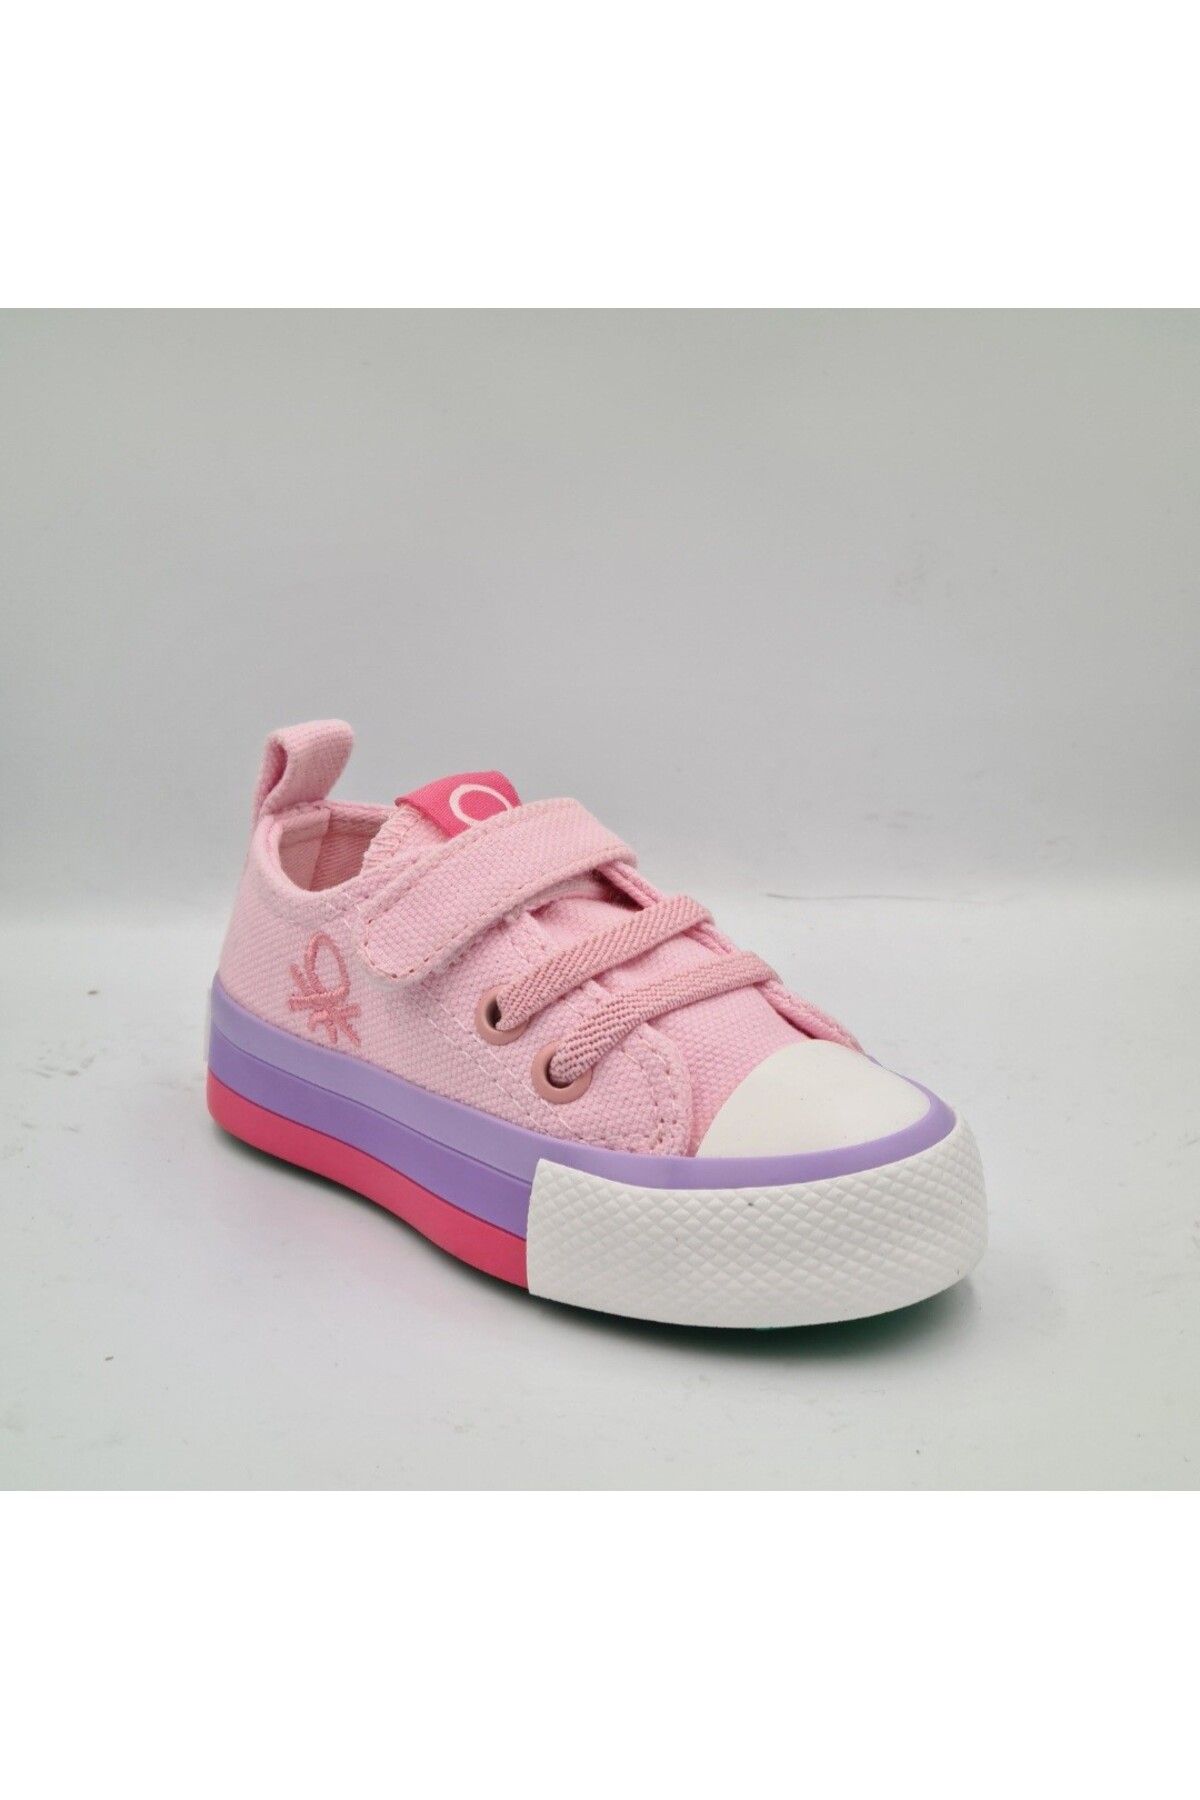 United Colors of Benetton Benetton 30652 Pembe Kız Çocuk (Bebe İlk Adım) Sneaker Spor Ayakkabı